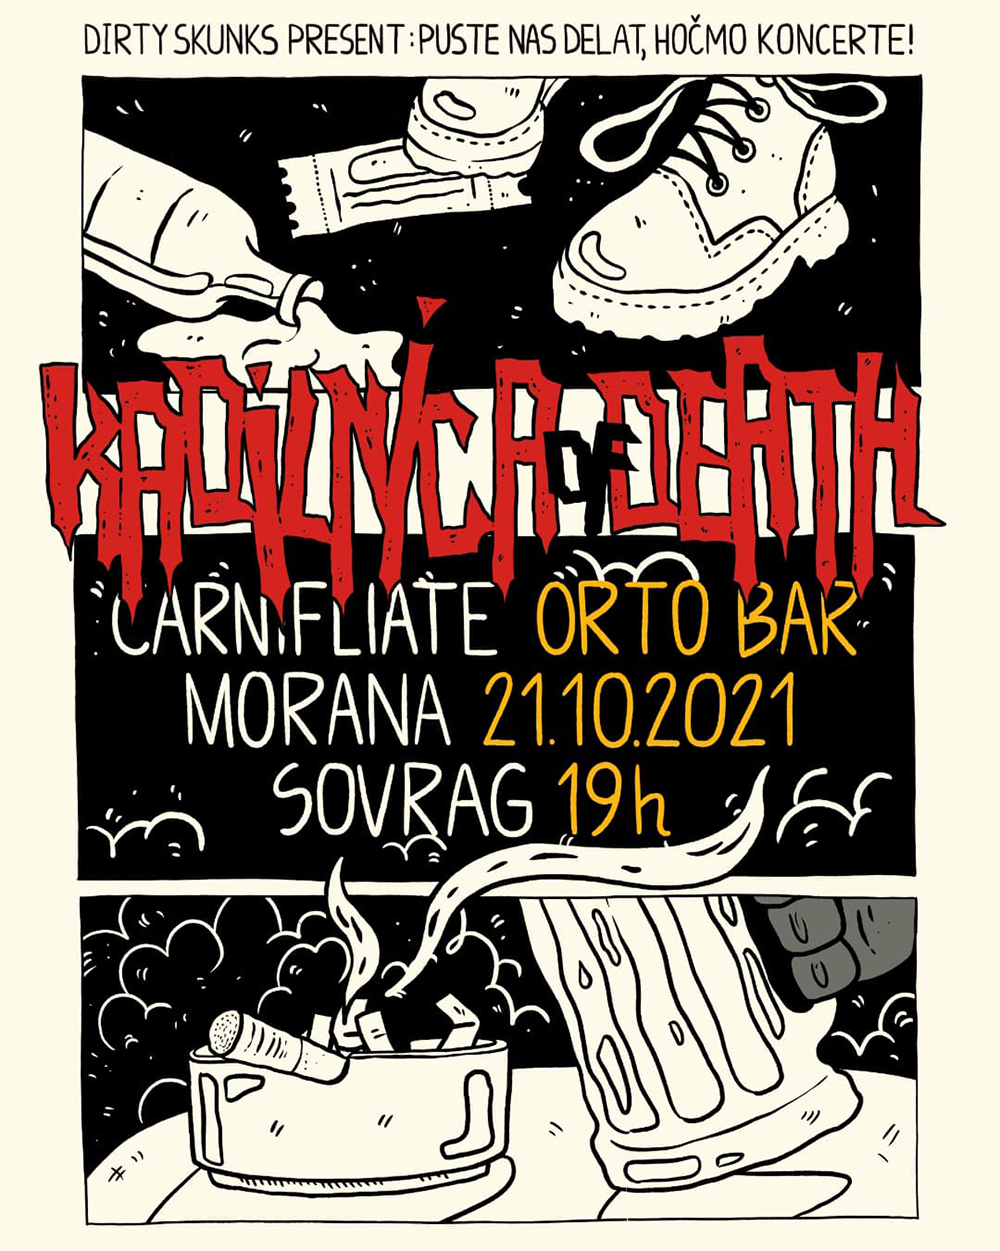 21.10.2021 - Kadilnica of Death: Carnifliate (Si), Morana (Si), Sovrag (Si) @ Orto Bar, Ljubljana